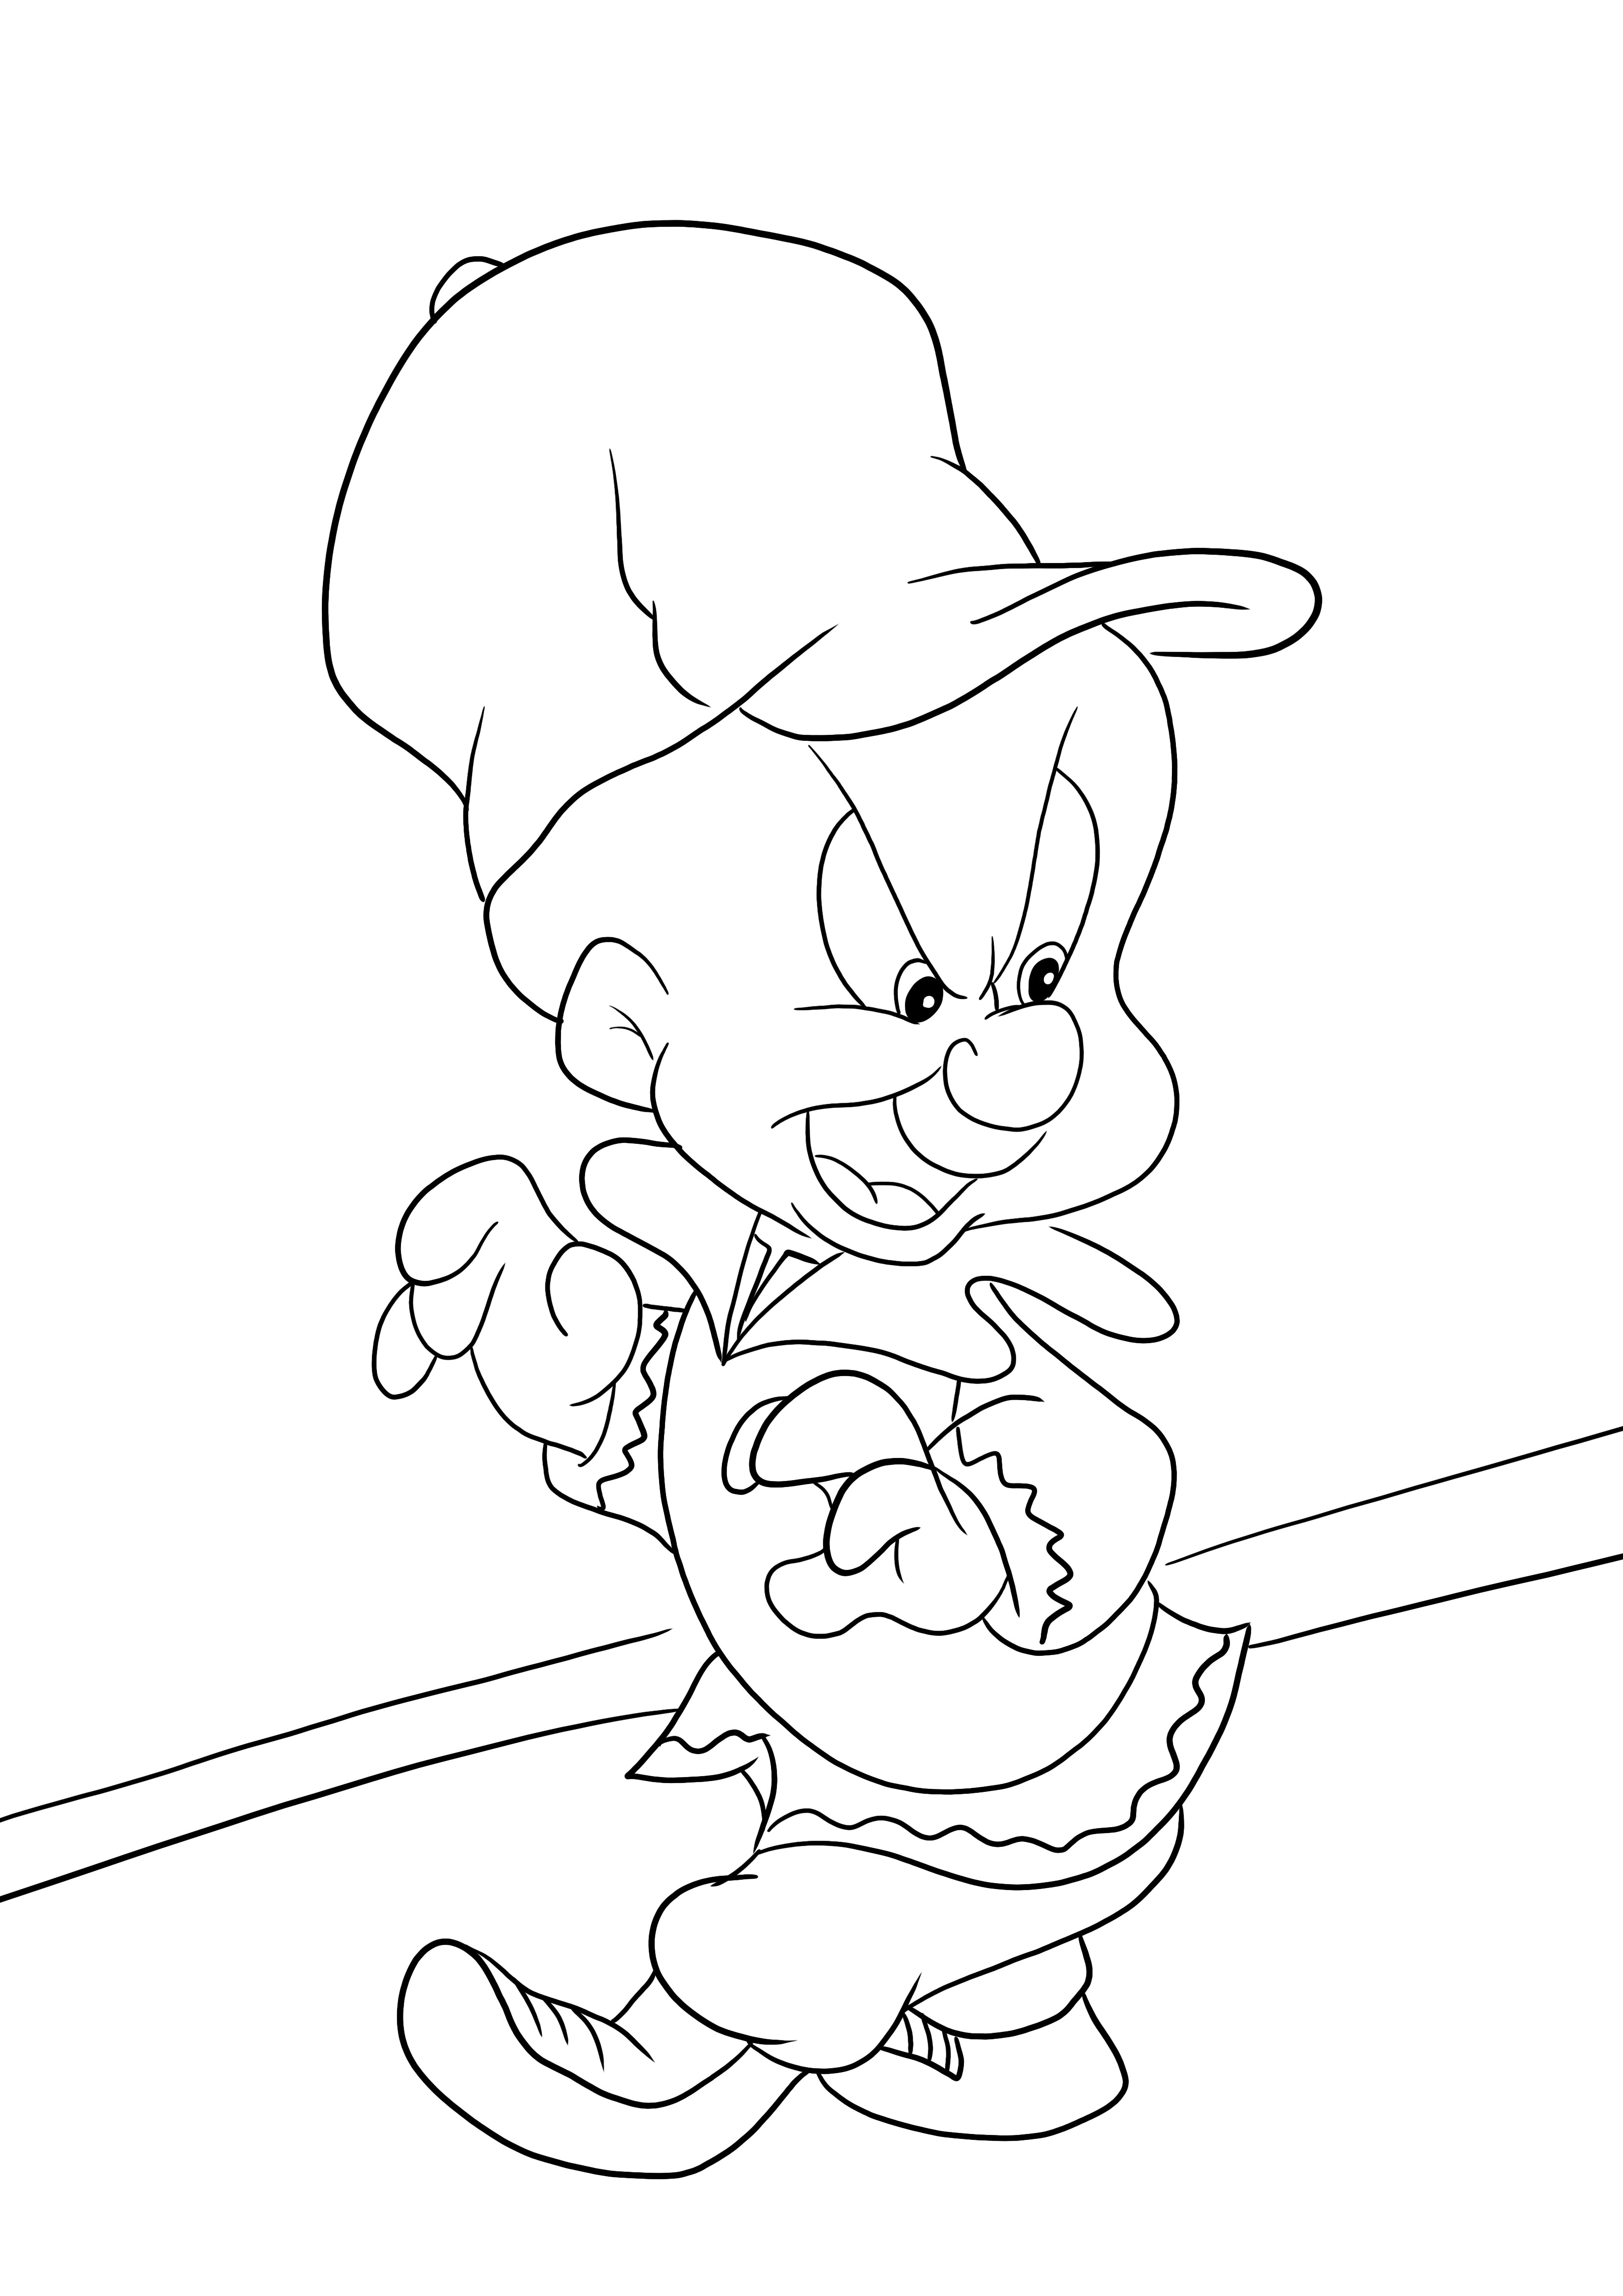 Elmer Fudd a Looney Tunes-tól ingyenesen letölthető és színező oldal